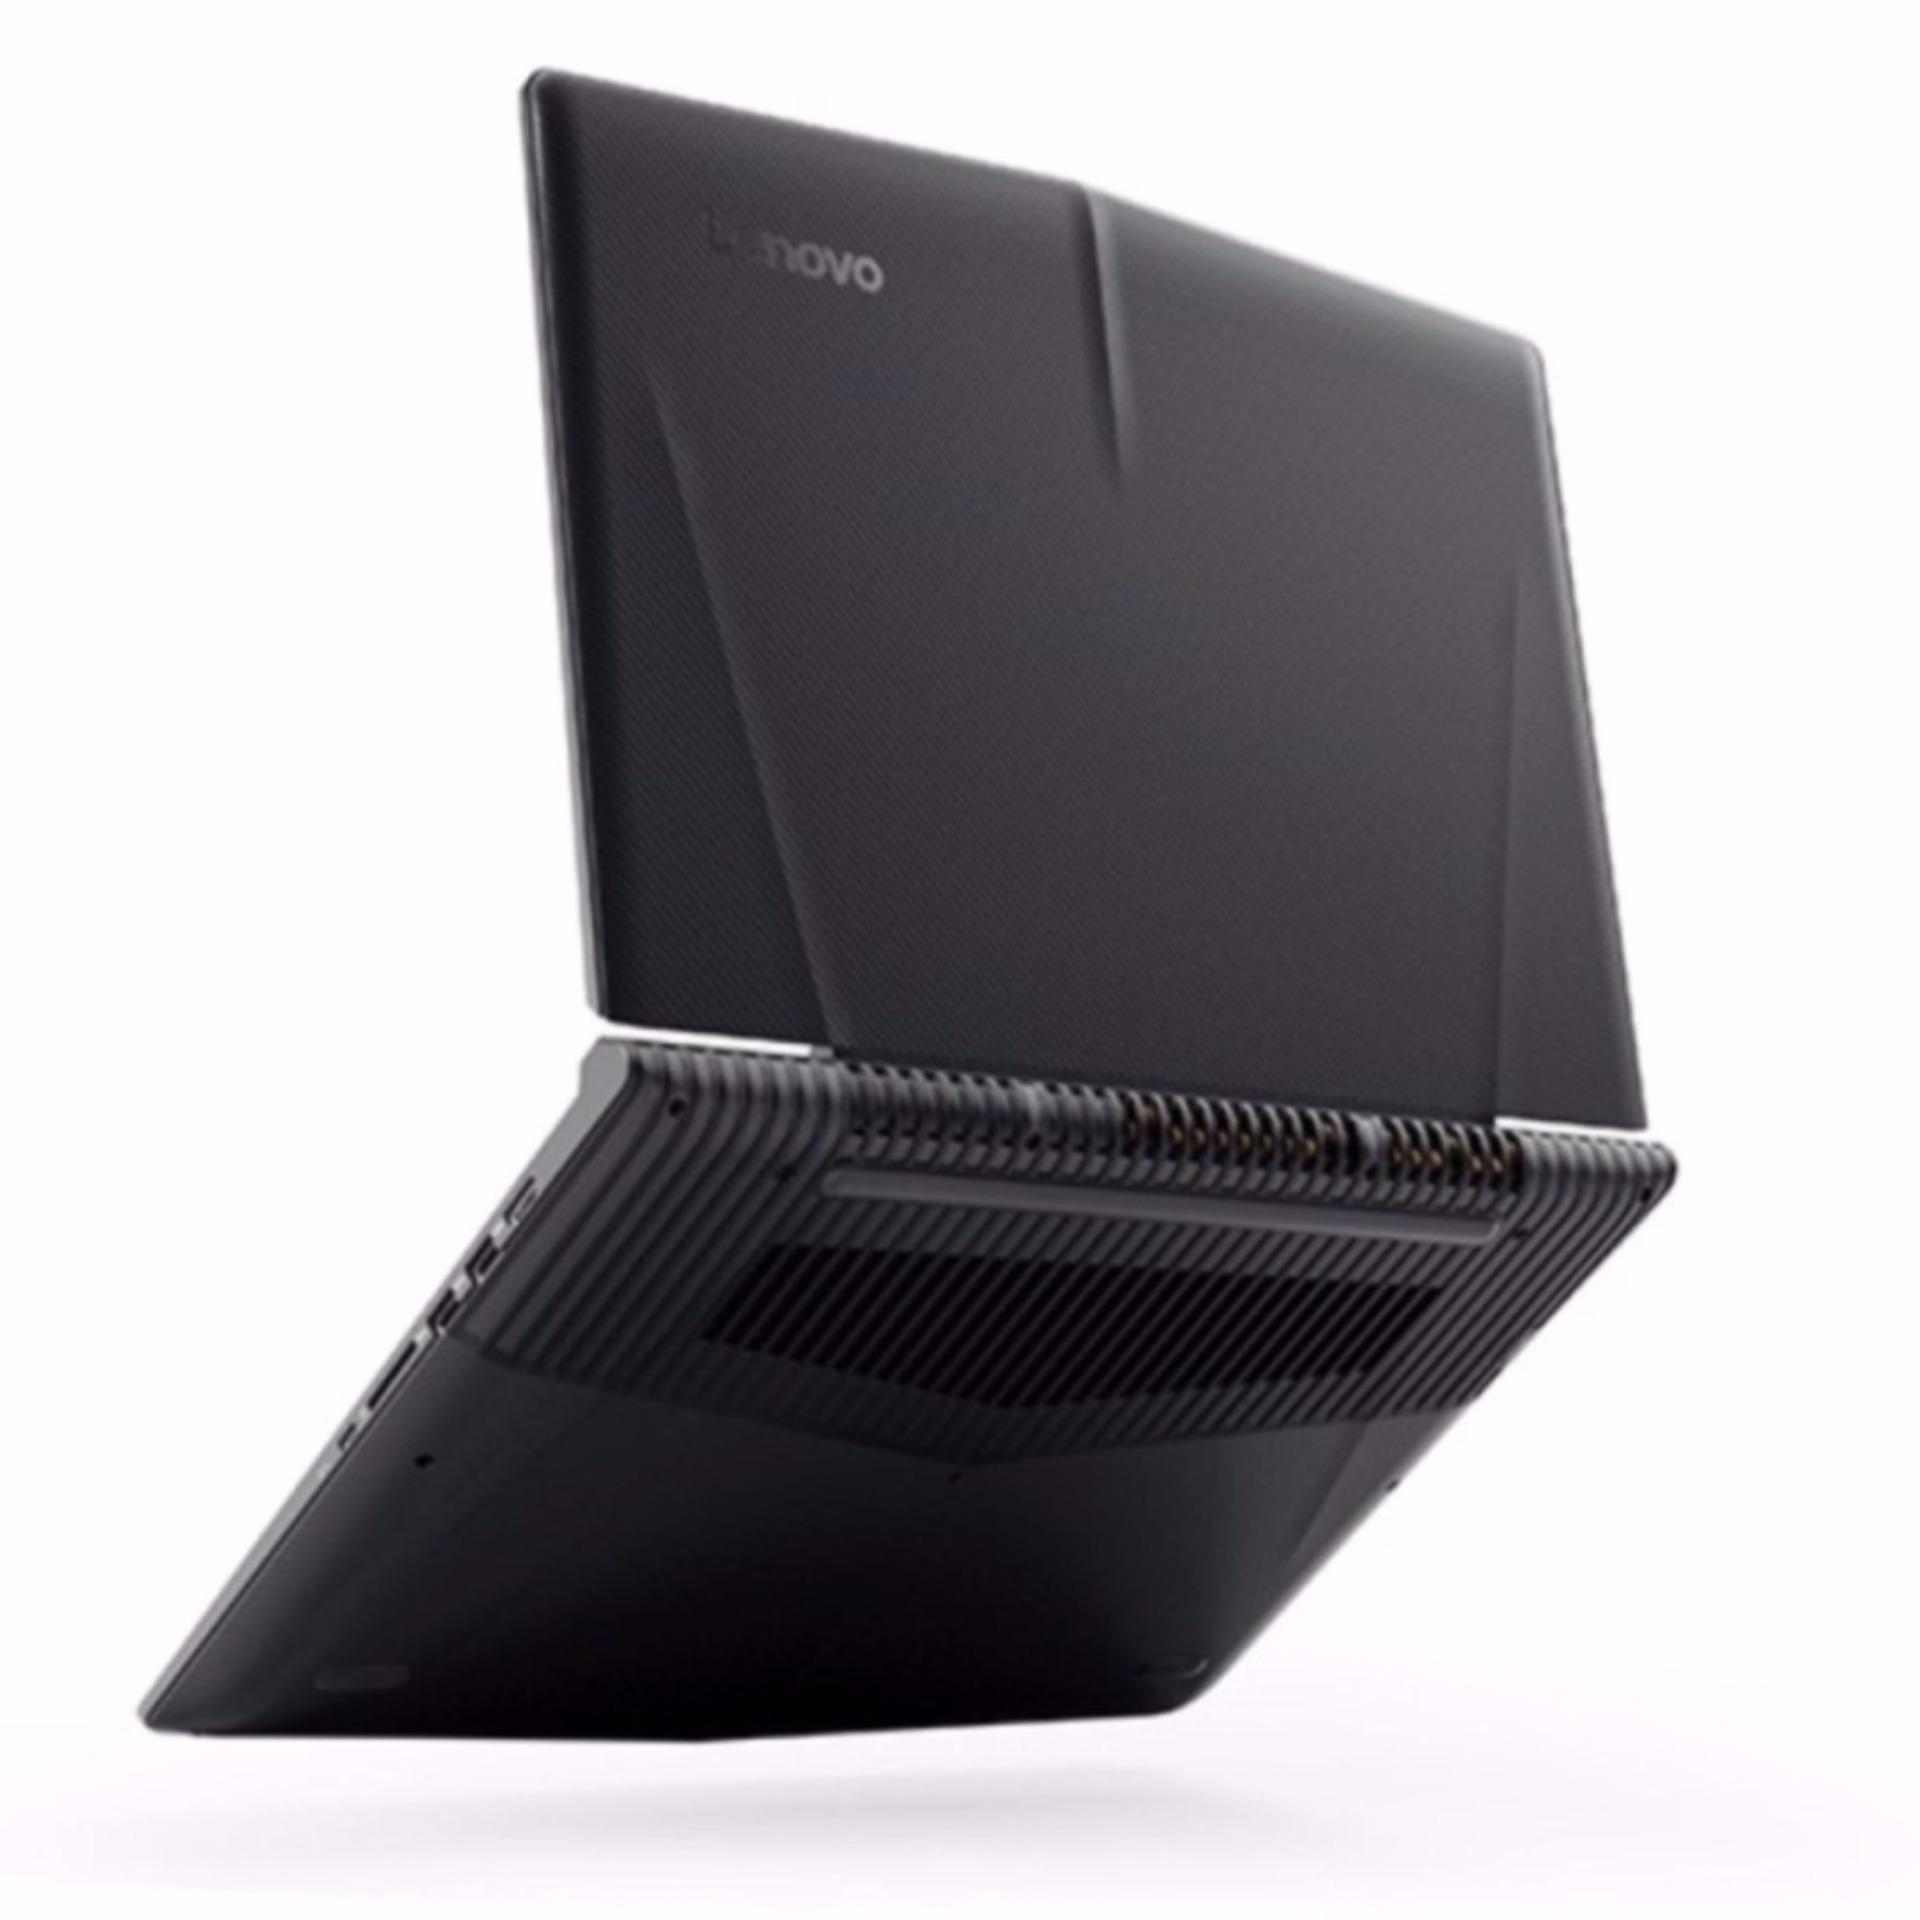 LENOVO legion Y520 (80YY000CSB) Gaming Laptop- i7-7700HQ 128GB SSD 1TB HDD 8GB GTX1060 3GB DDR5, 15.6INCH FHD WIN10